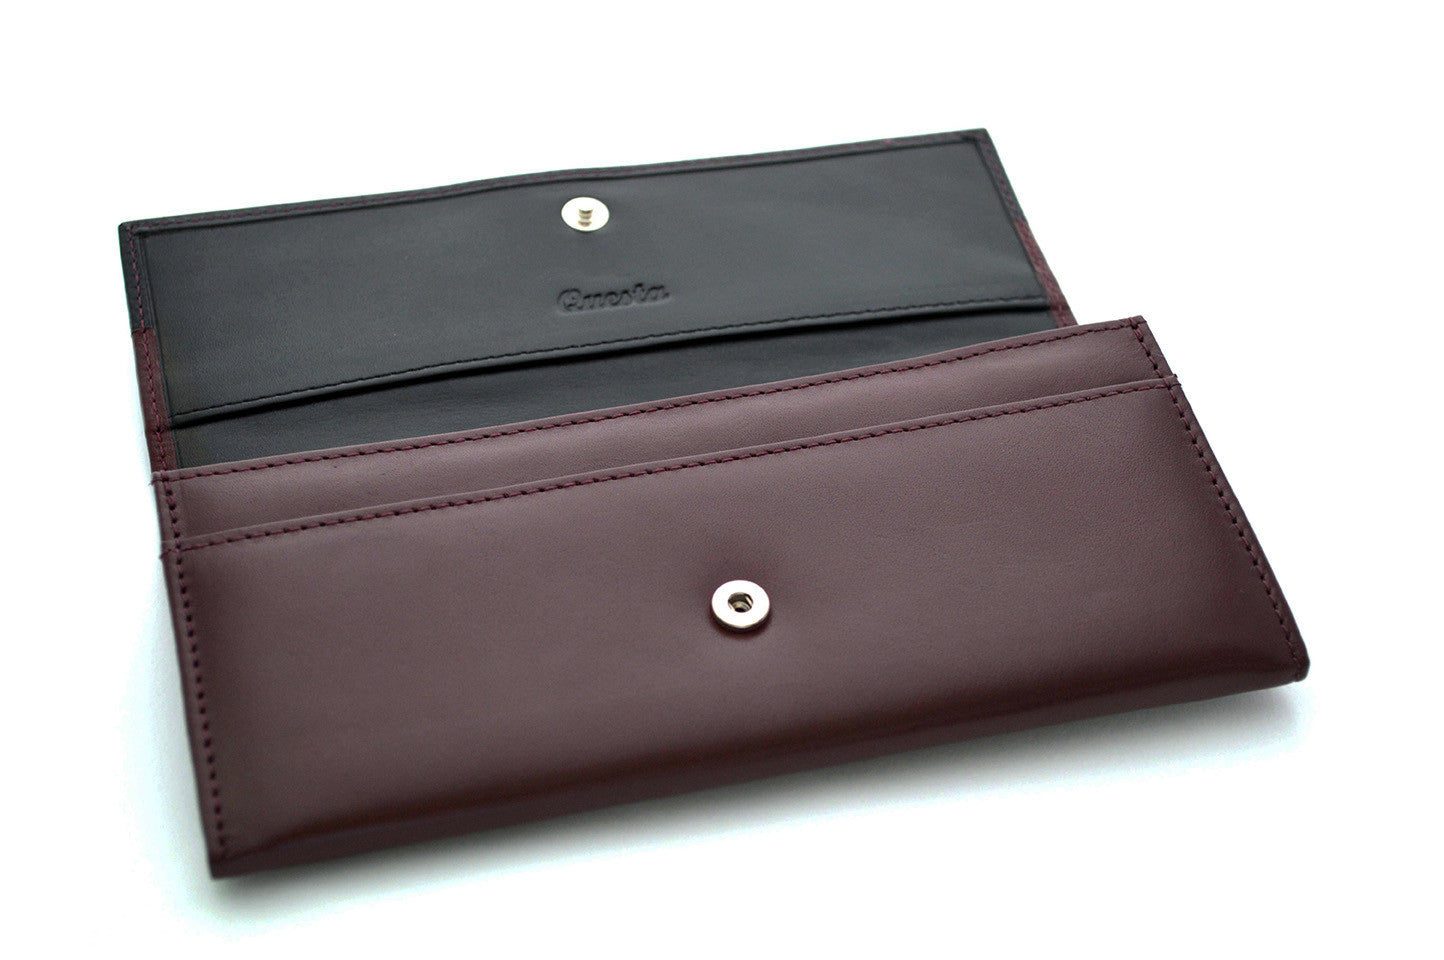 The Best Affordable Designer Handbags -- All Under $200!